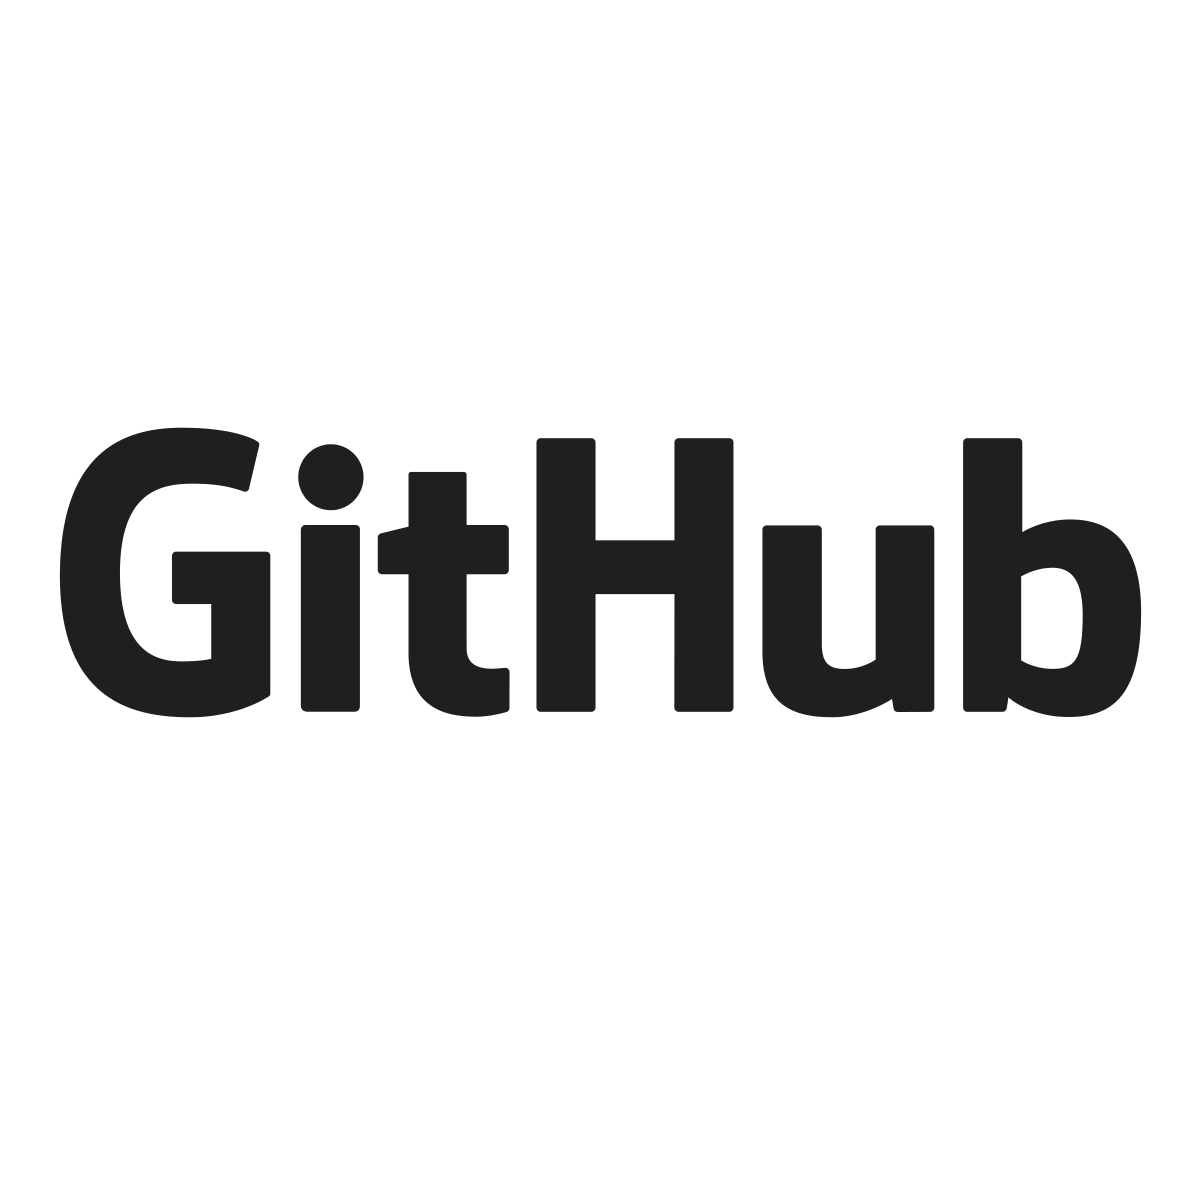 Cara Menyadap Hp Android Gratis. sadap-hp-android-gratis · GitHub Topics · GitHub